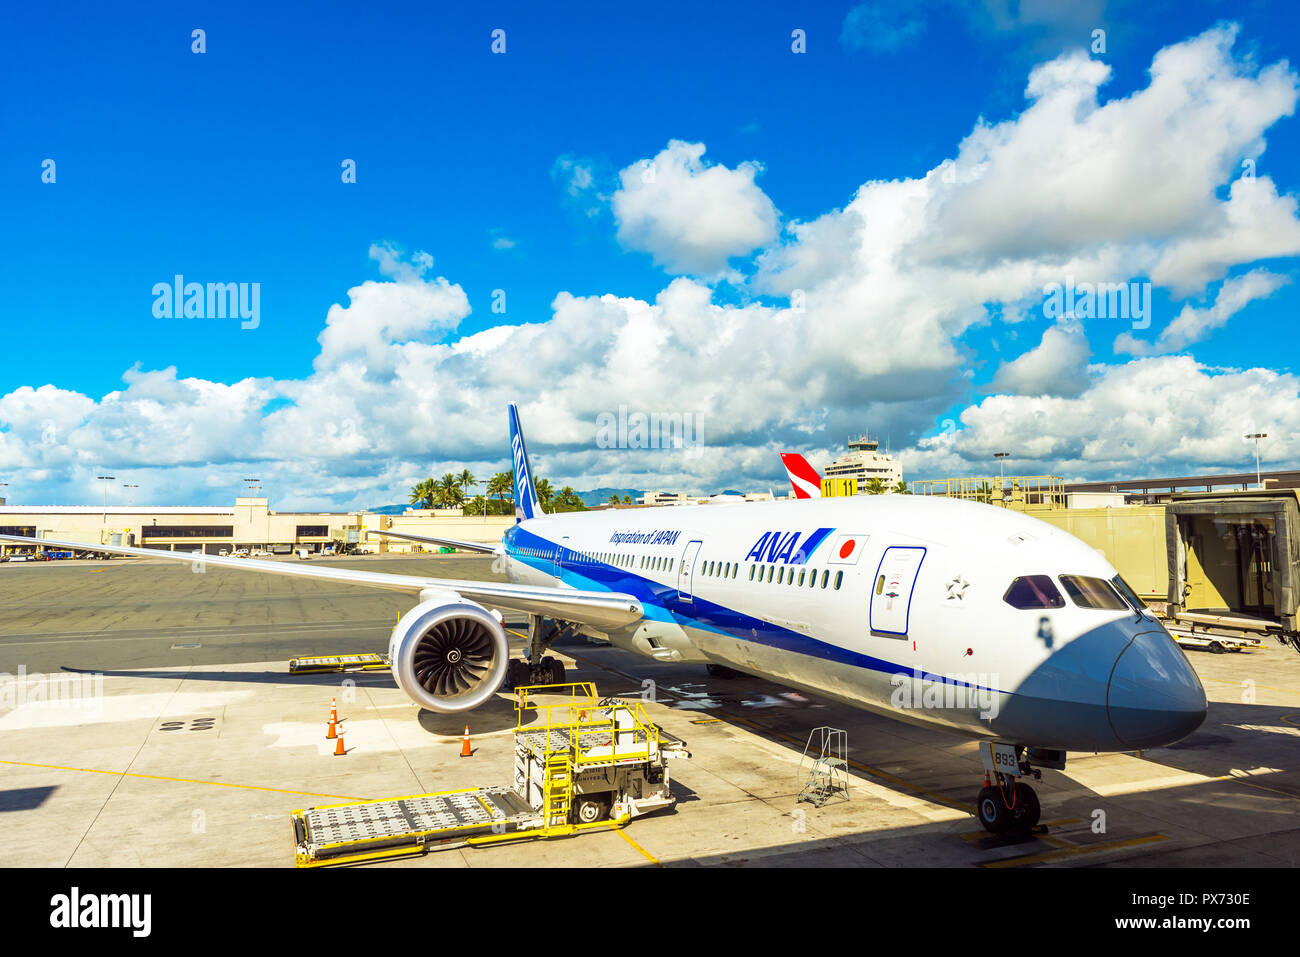 HONOLULU, HAWAII - février 16, 2018 : avis de l'avion à l'aéroport. L'espace de copie pour le texte Banque D'Images